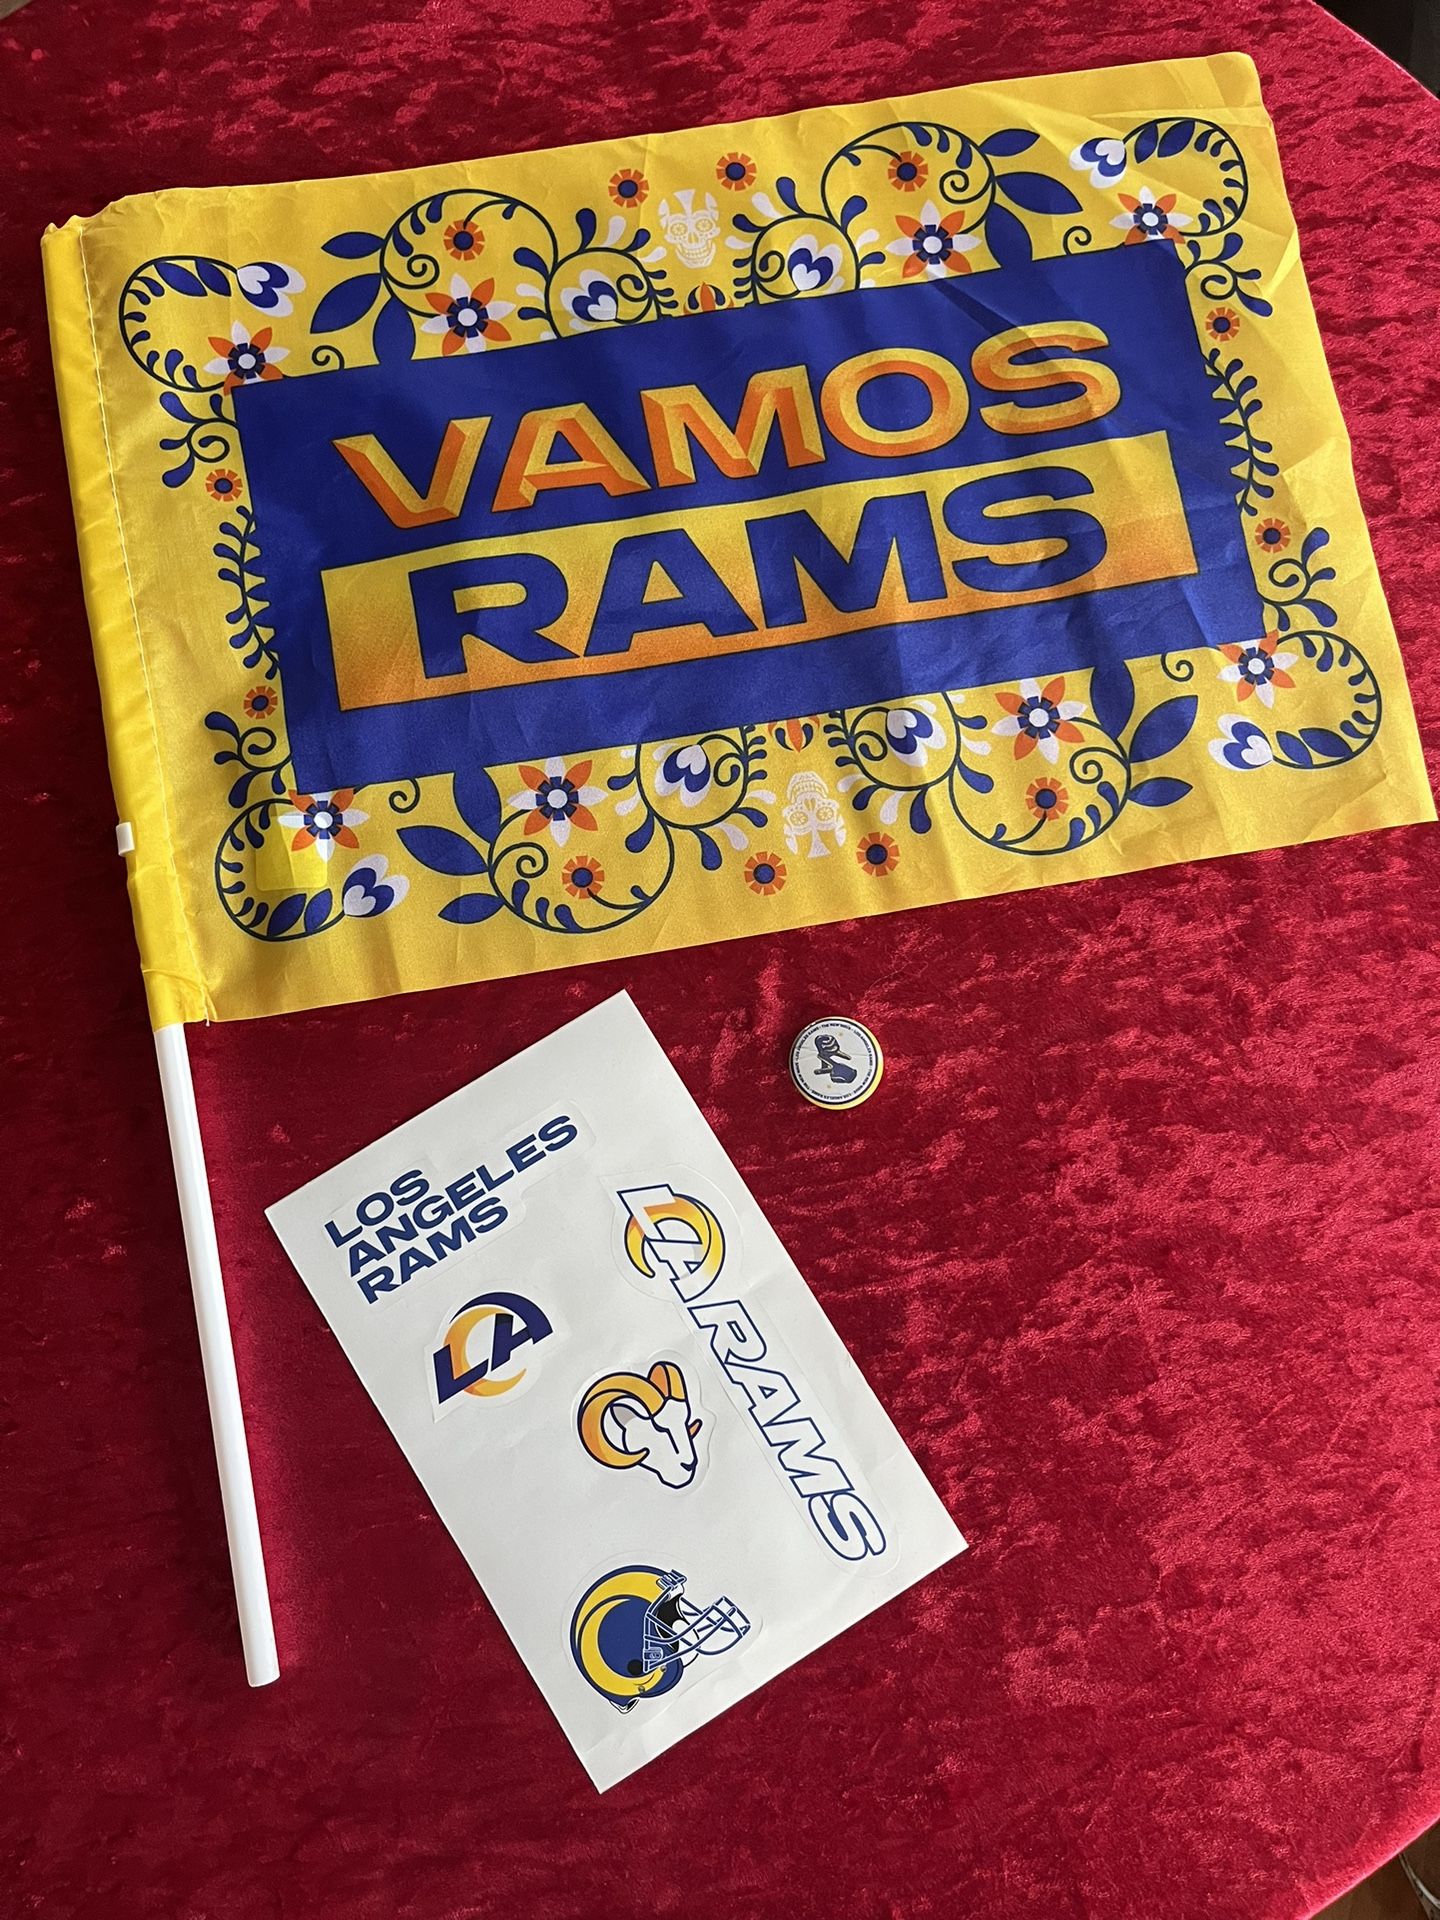 Los Angeles Rams LA Experience Promo Merch 